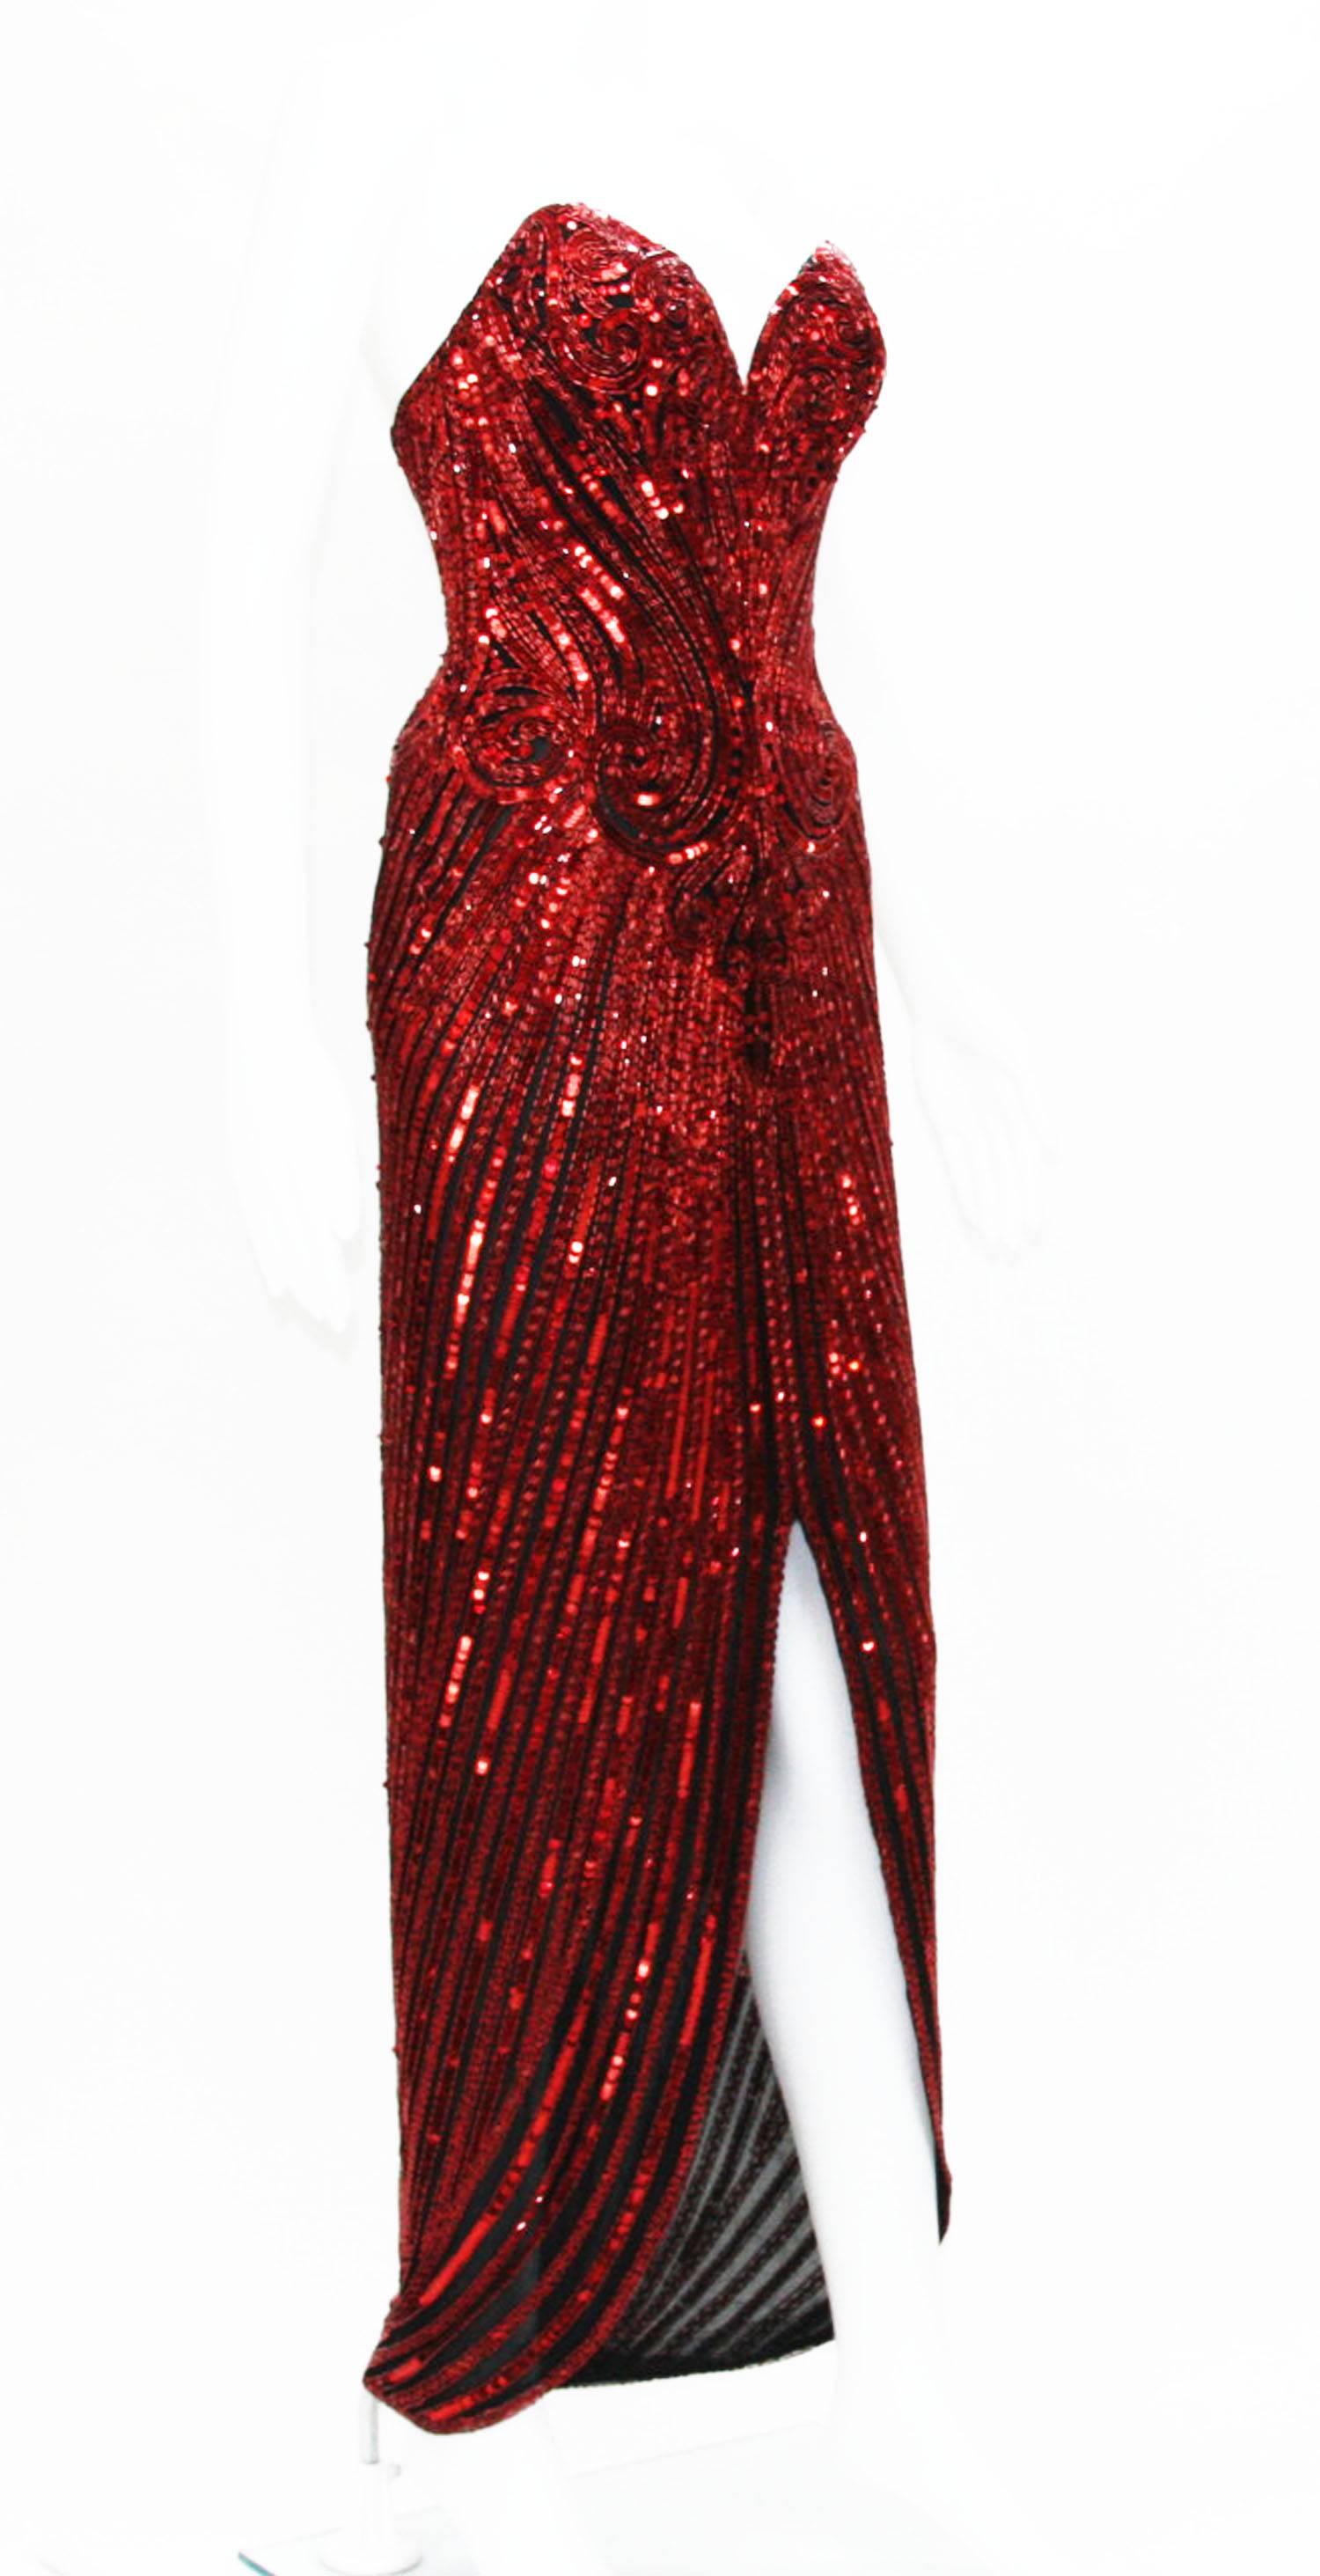 Une magnifique robe Bob Mackie de 1982.
Taille de créateur 6. 
Couleur - Rouge foncé.
Le filet noir est orné de perles et de paillettes.
Corset et ceinture. Entièrement doublé.
Mesures : Poitrine - 32 pouces, Taille - 26 pouces, Hanches - 34 pouces.